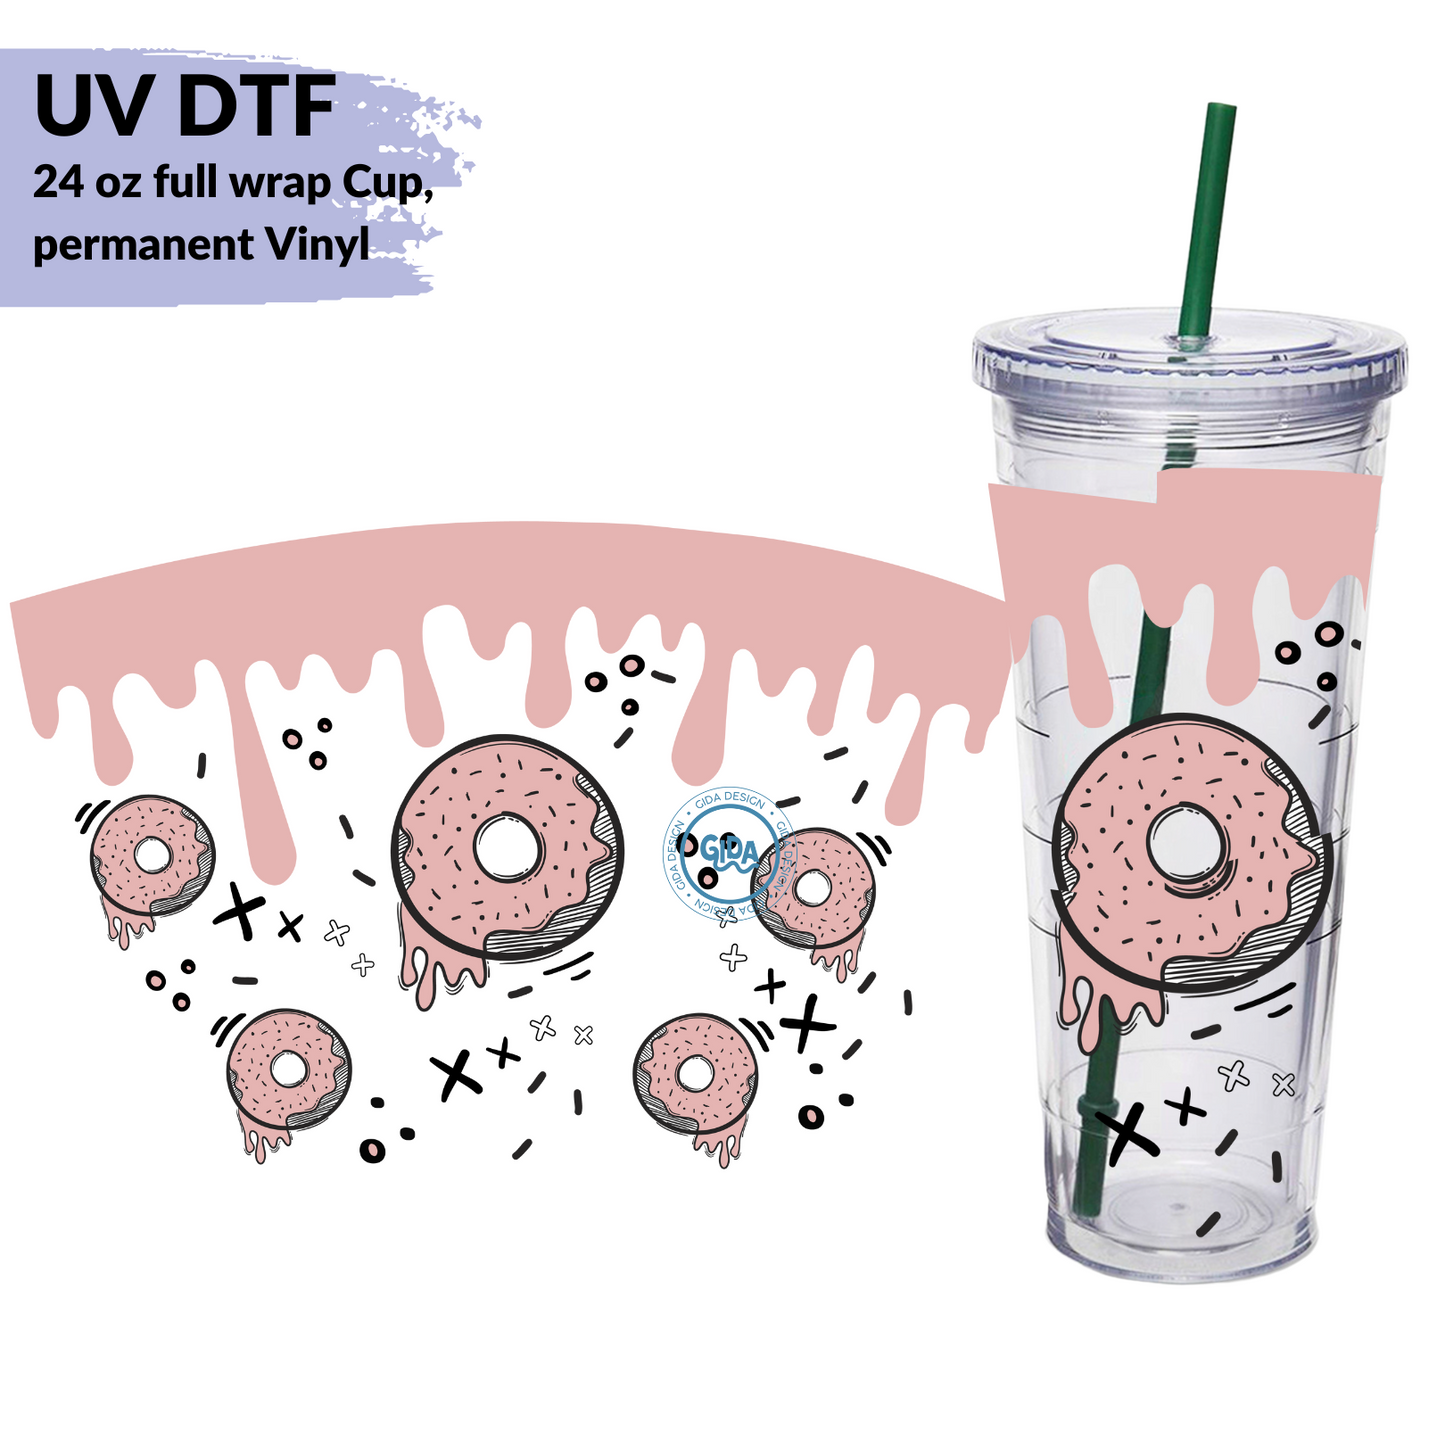 UV DTF - Rose Donuts Black XOXO 24 oz Permanent wrap